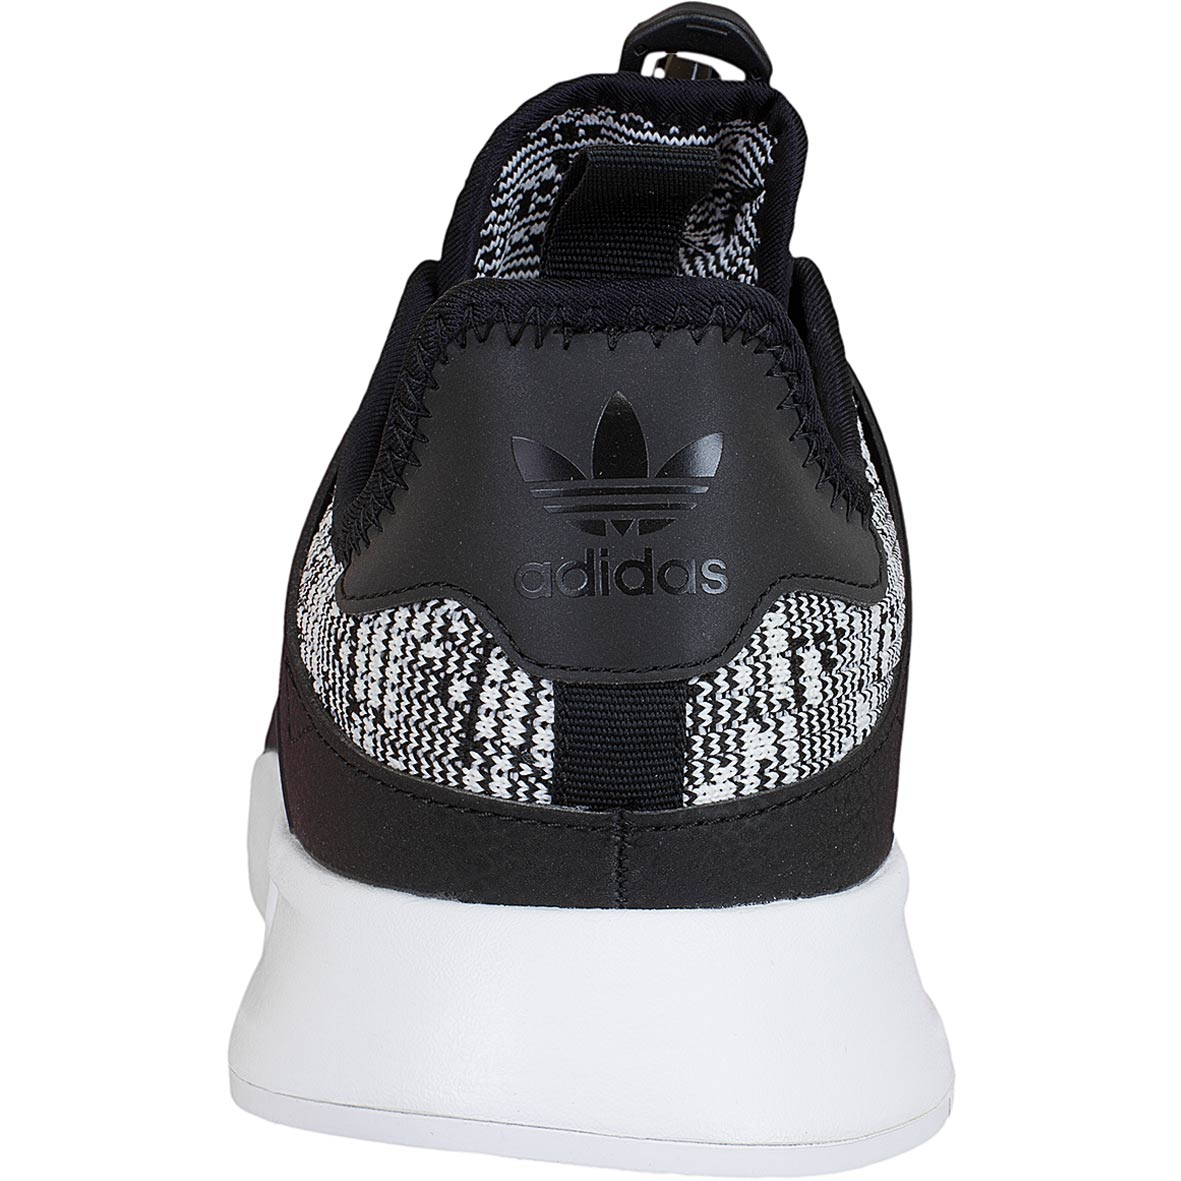 ☆ Adidas Originals Sneaker X PLR schwarz/schwarz/weiß - hier bestellen!